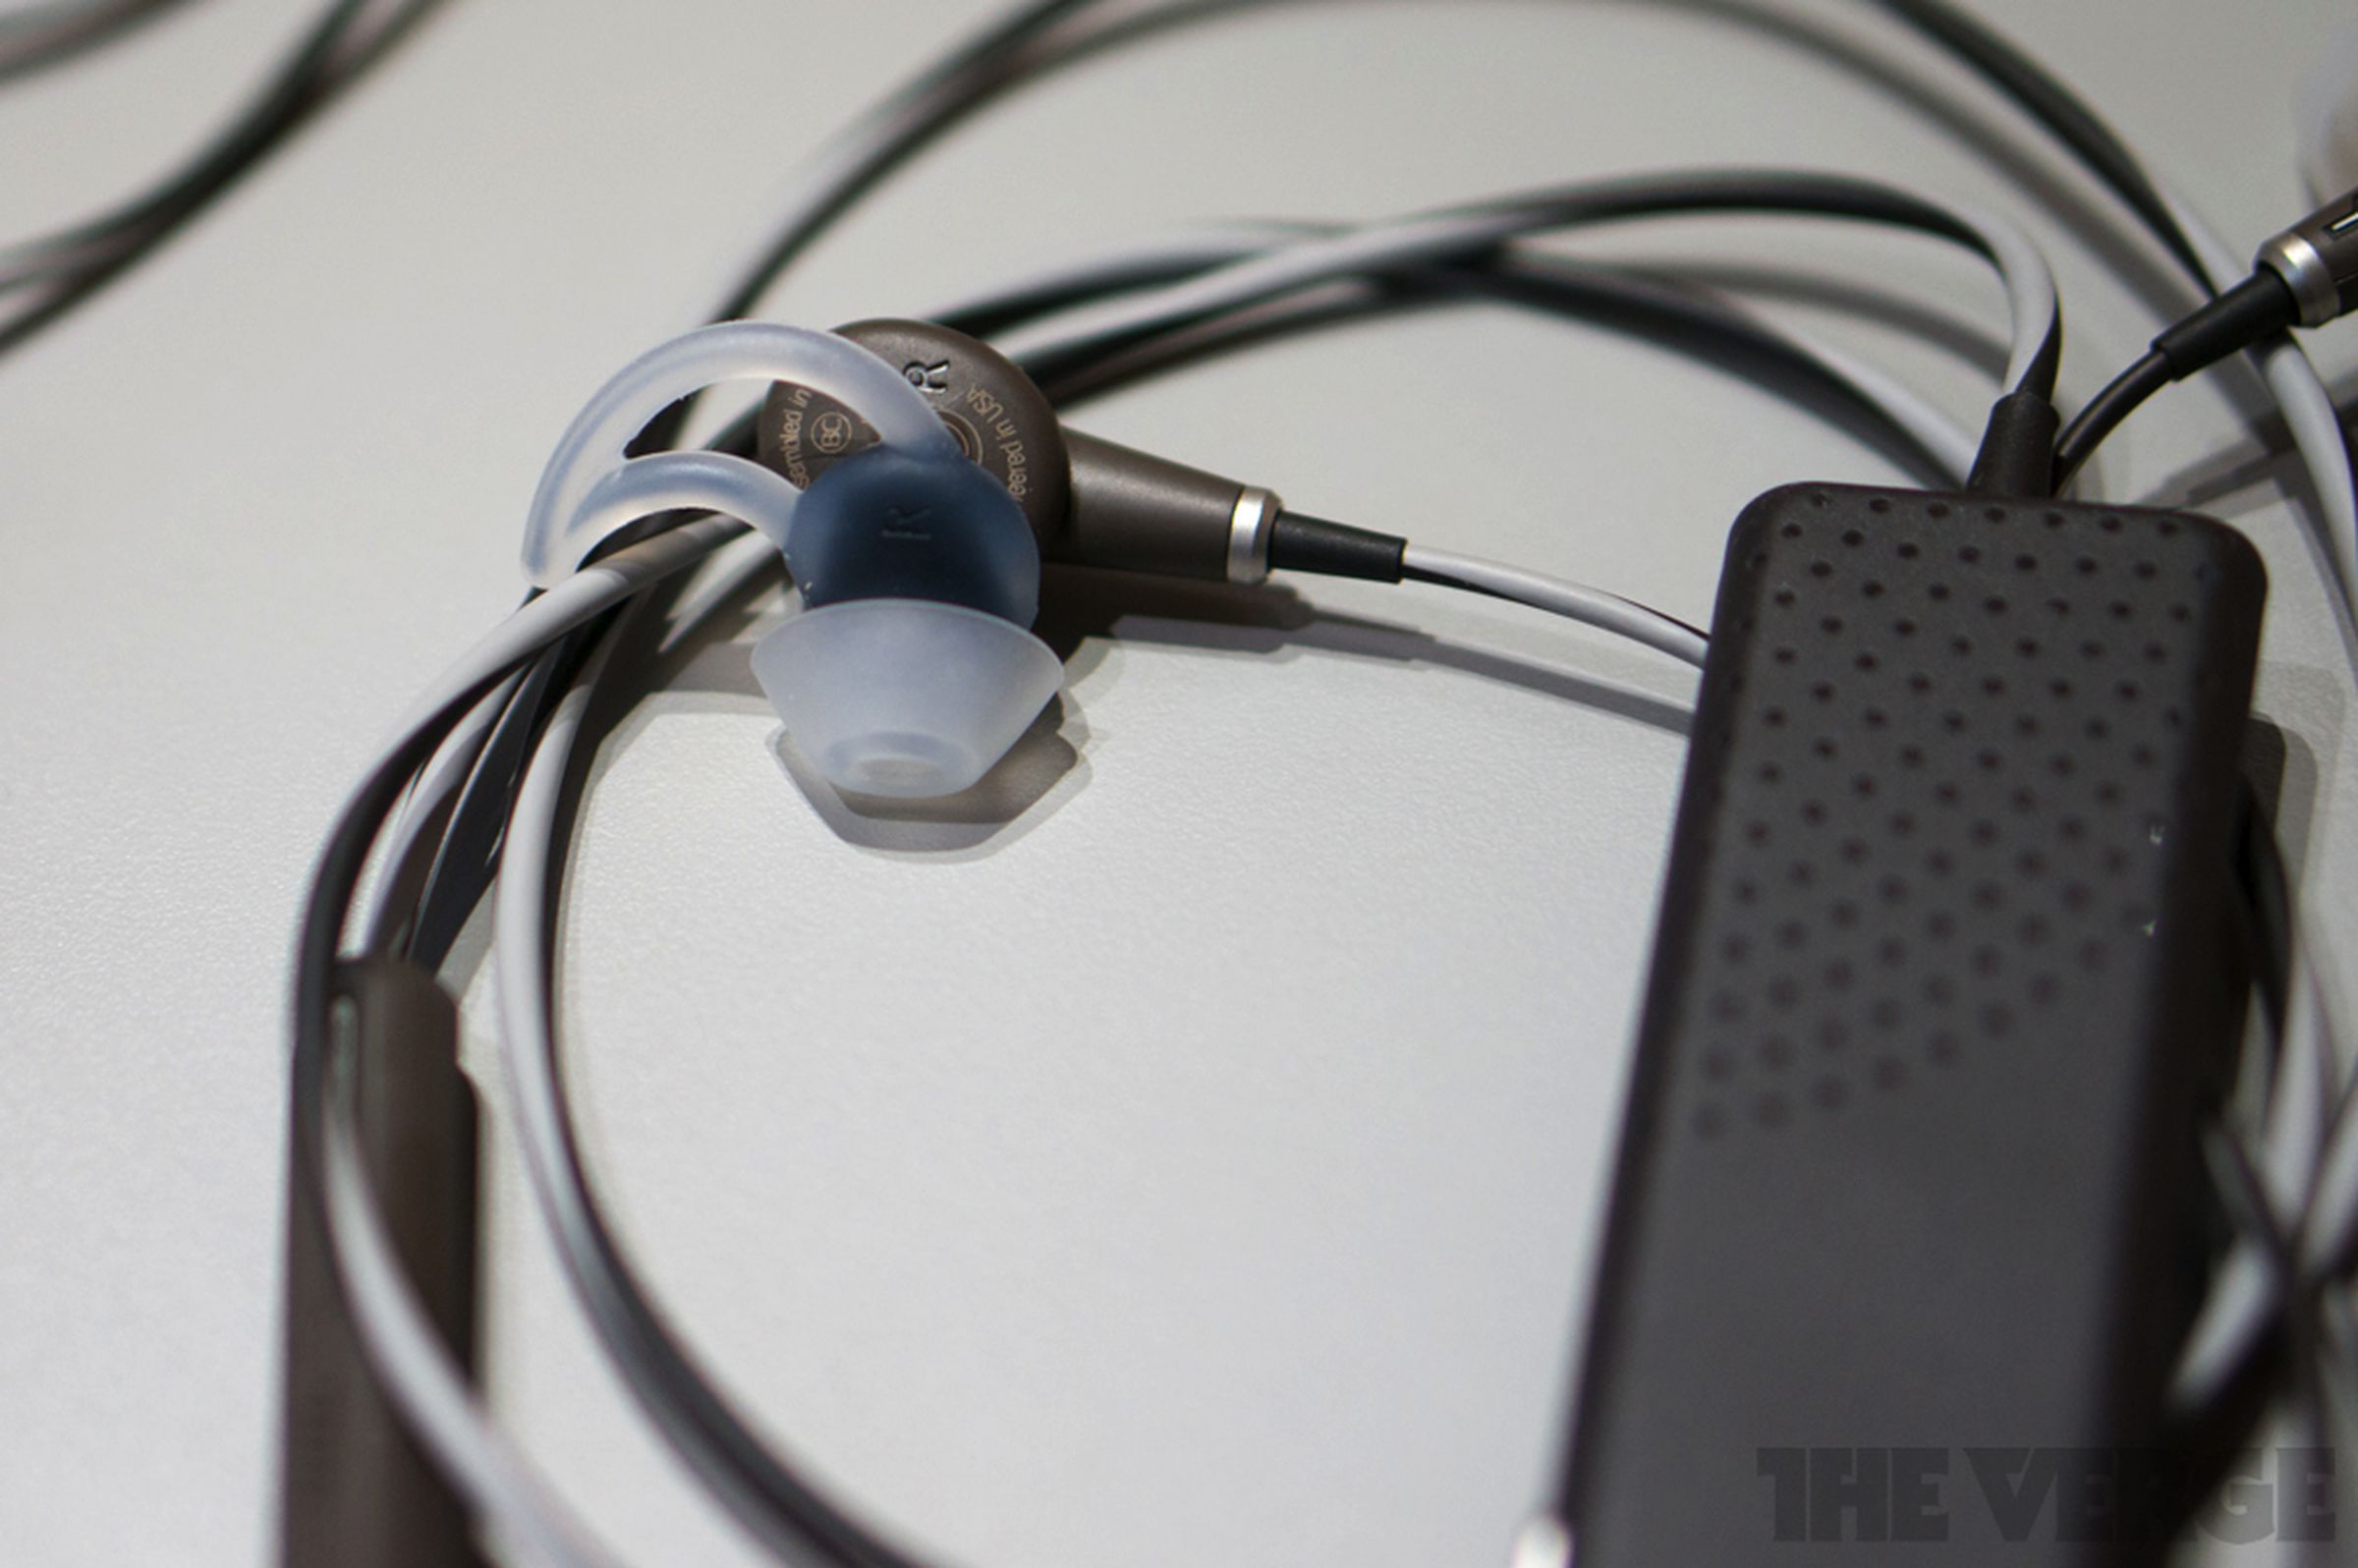 Bose QuietComfort 20 earbuds hands-on photos